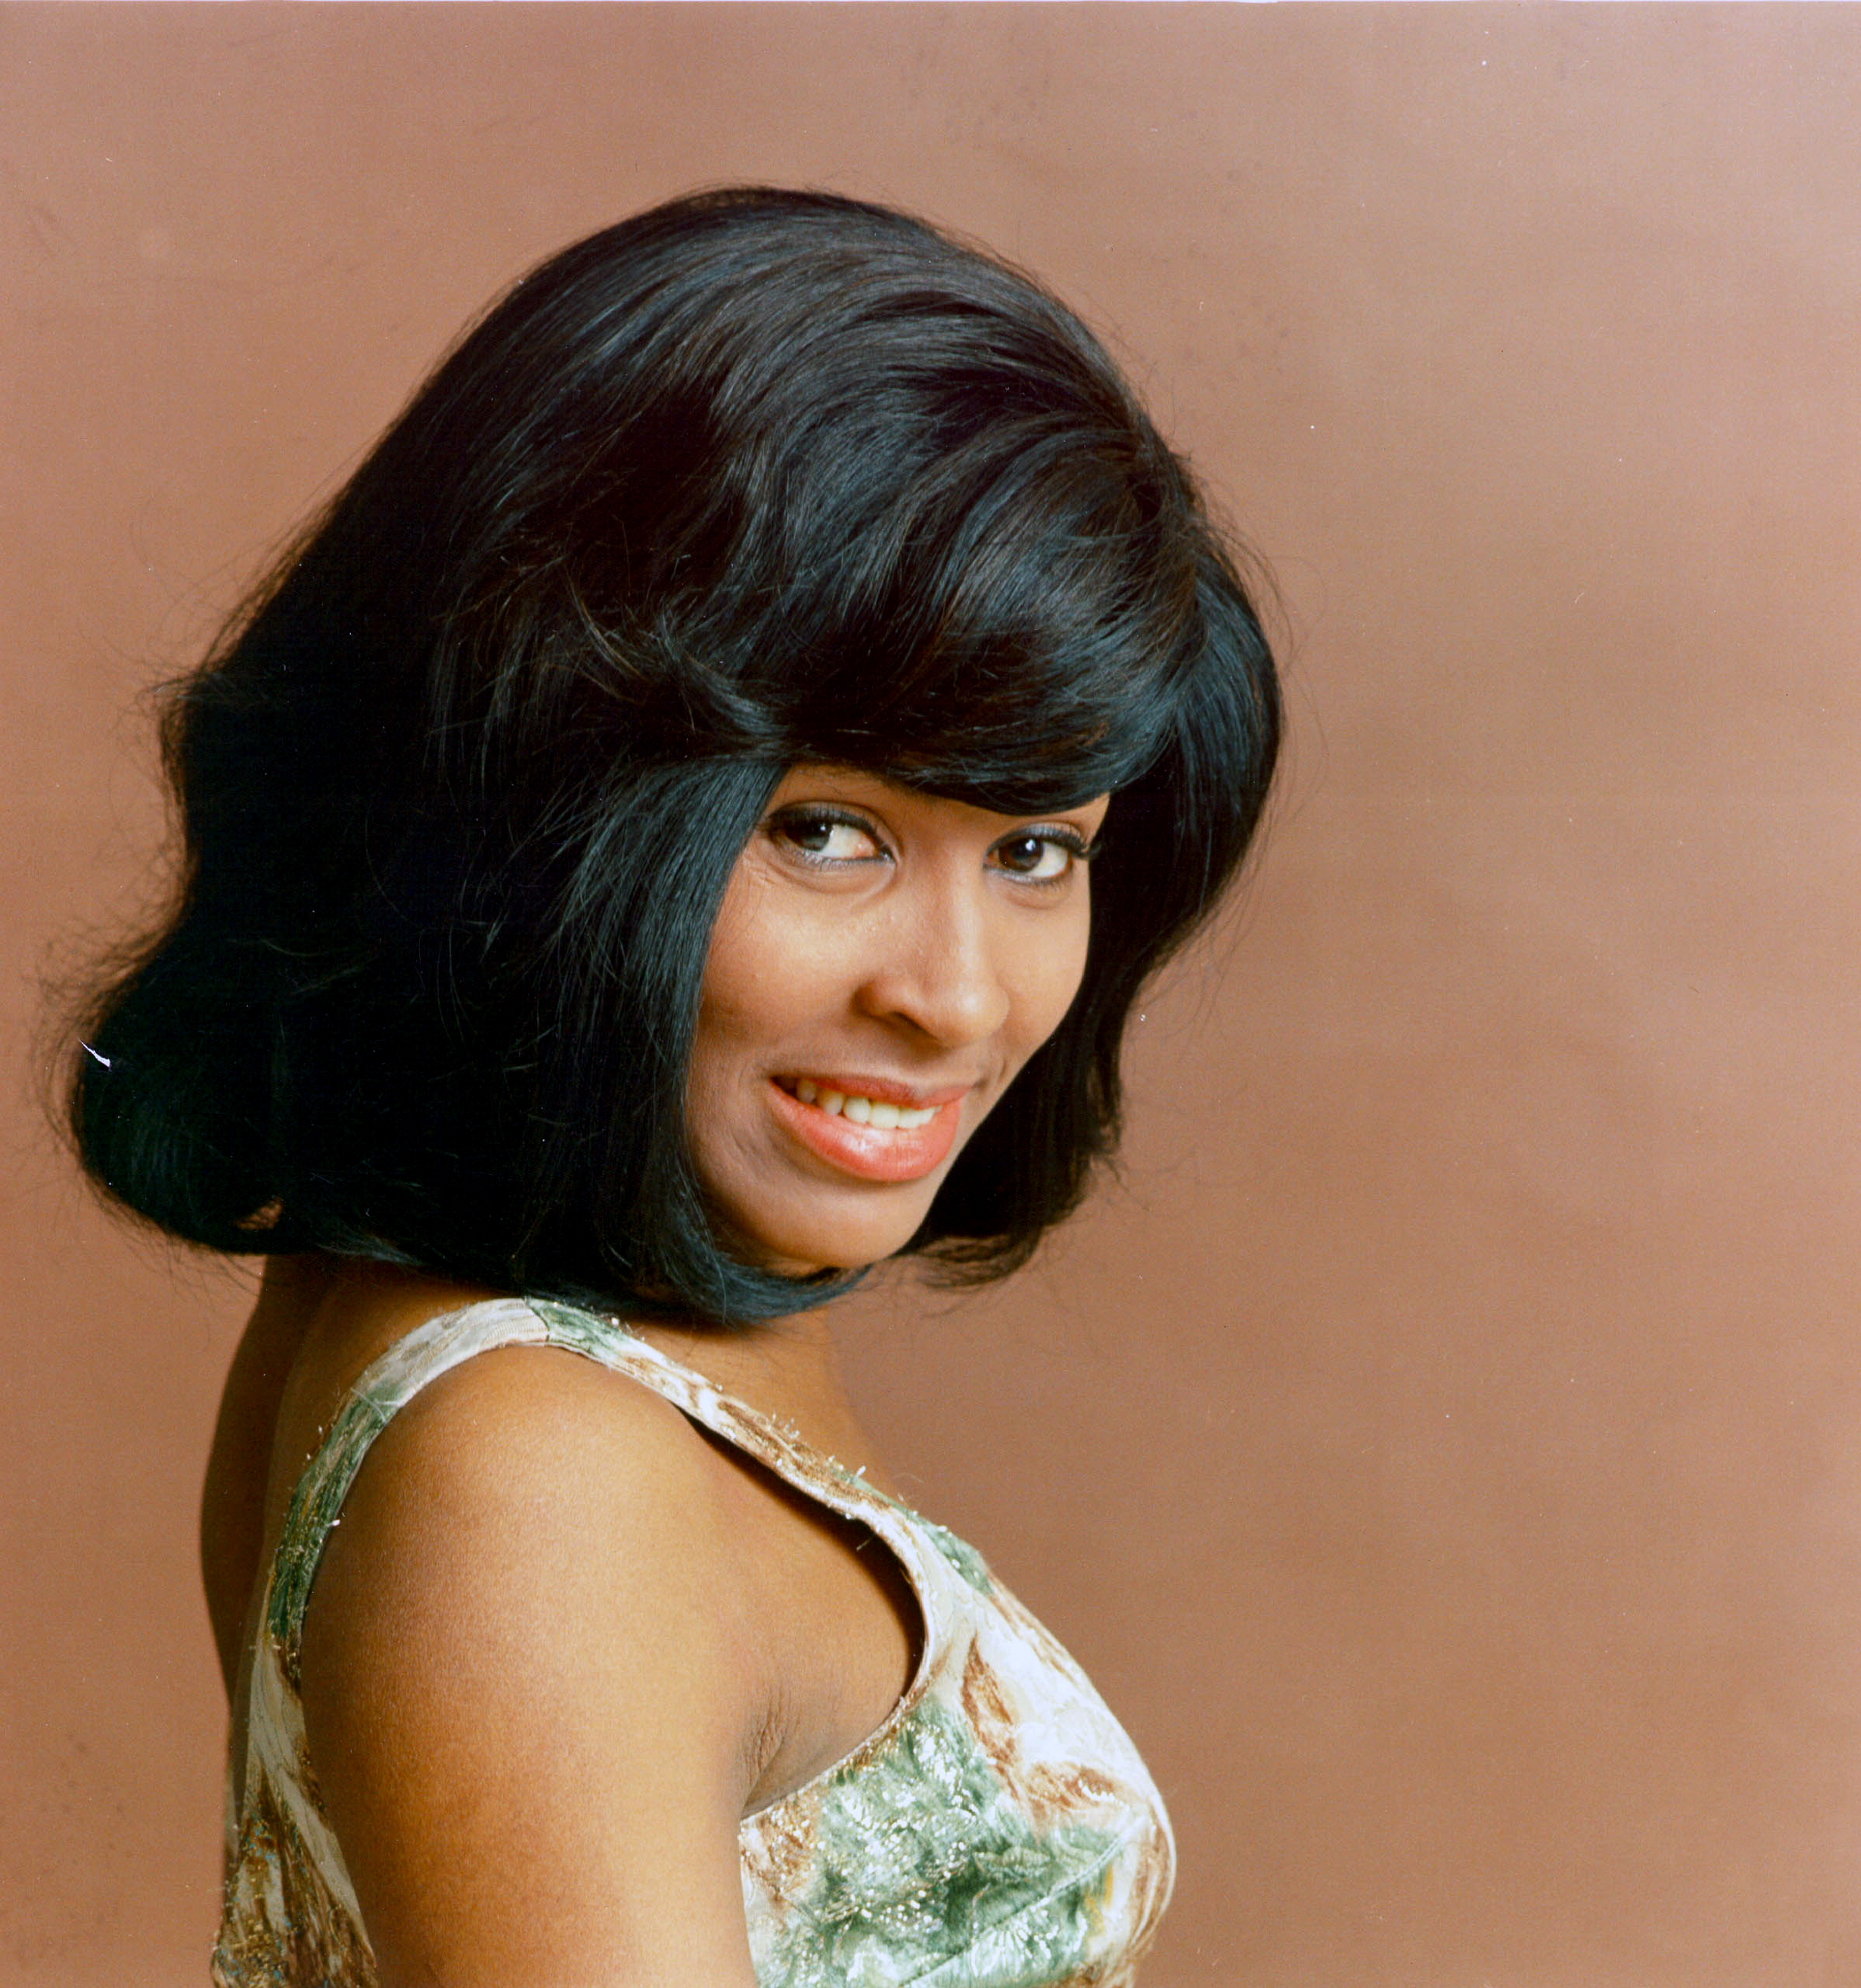 Die Sängerin posiert für ein Porträt im Jahr 1964. | Quelle: Getty Images